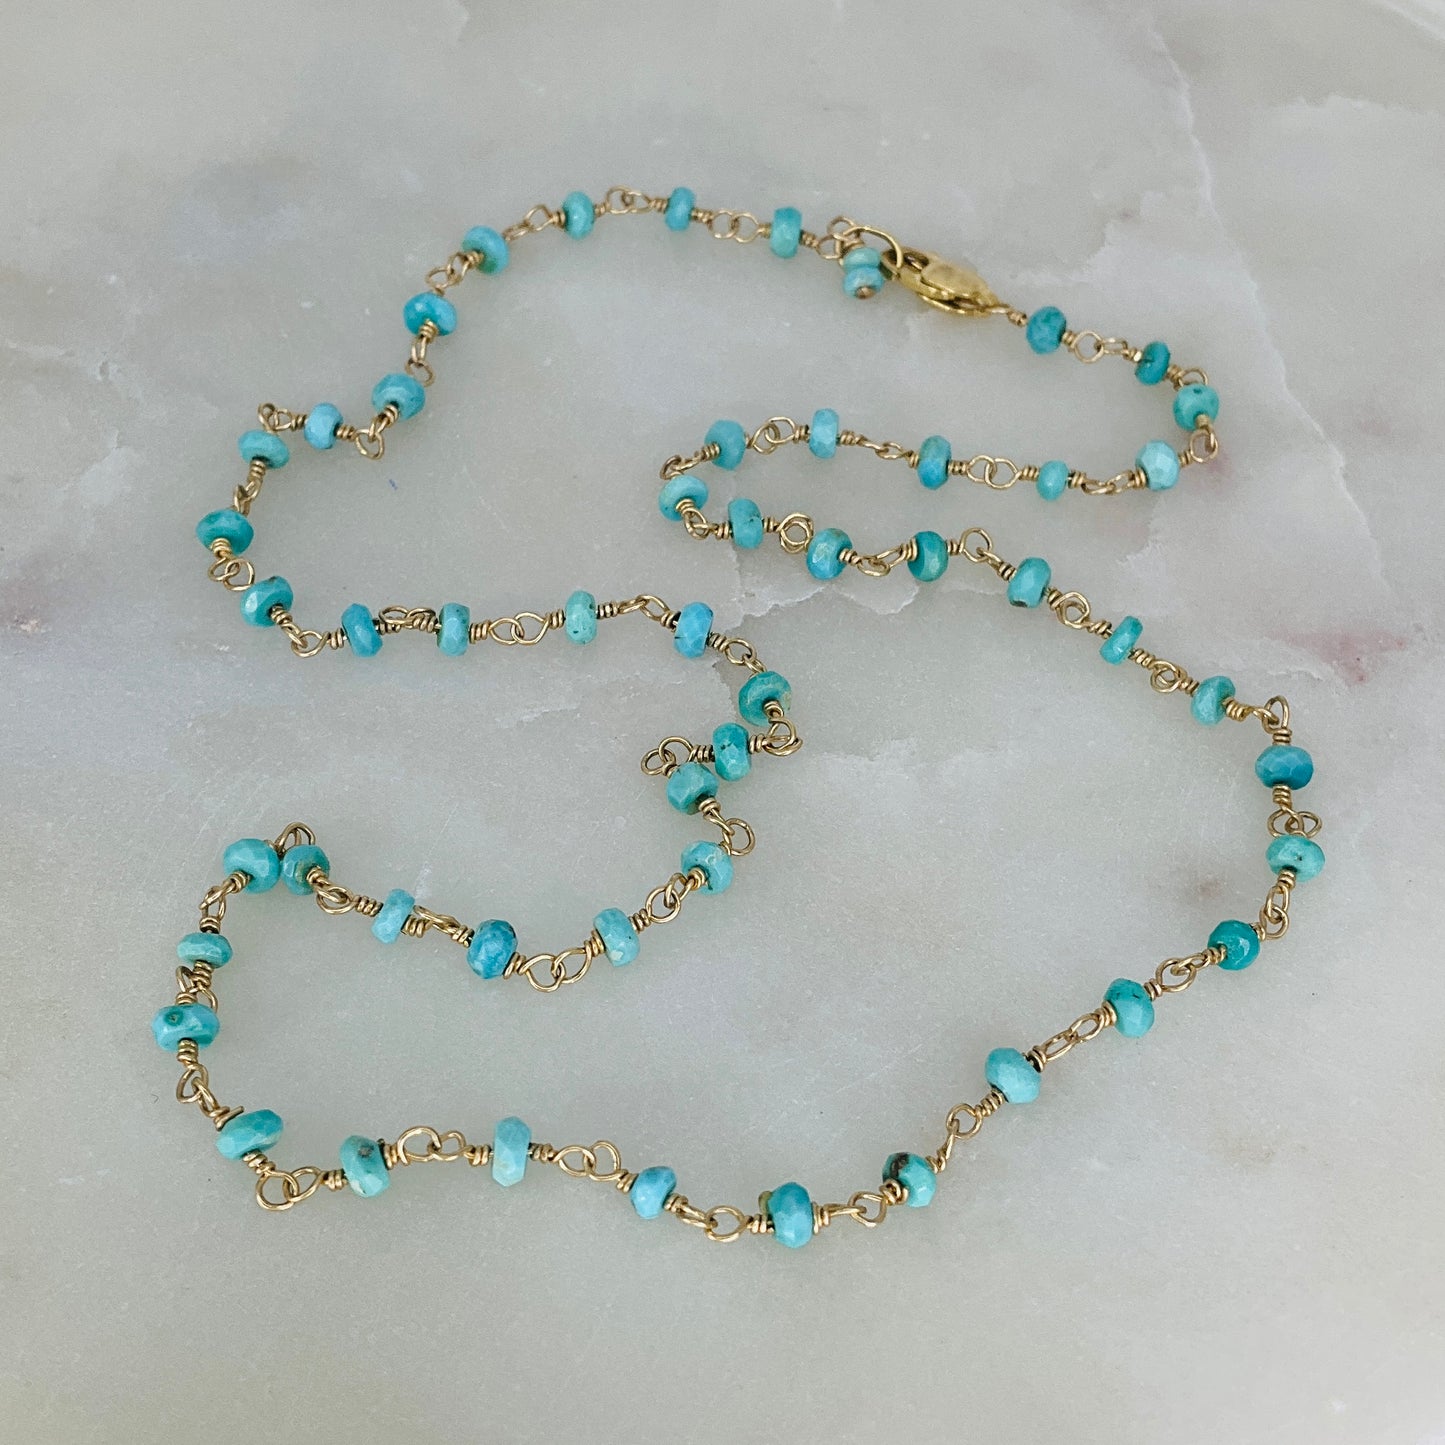 Gemstone Rosary Necklace ~ Sleeping Beauty Turquoise